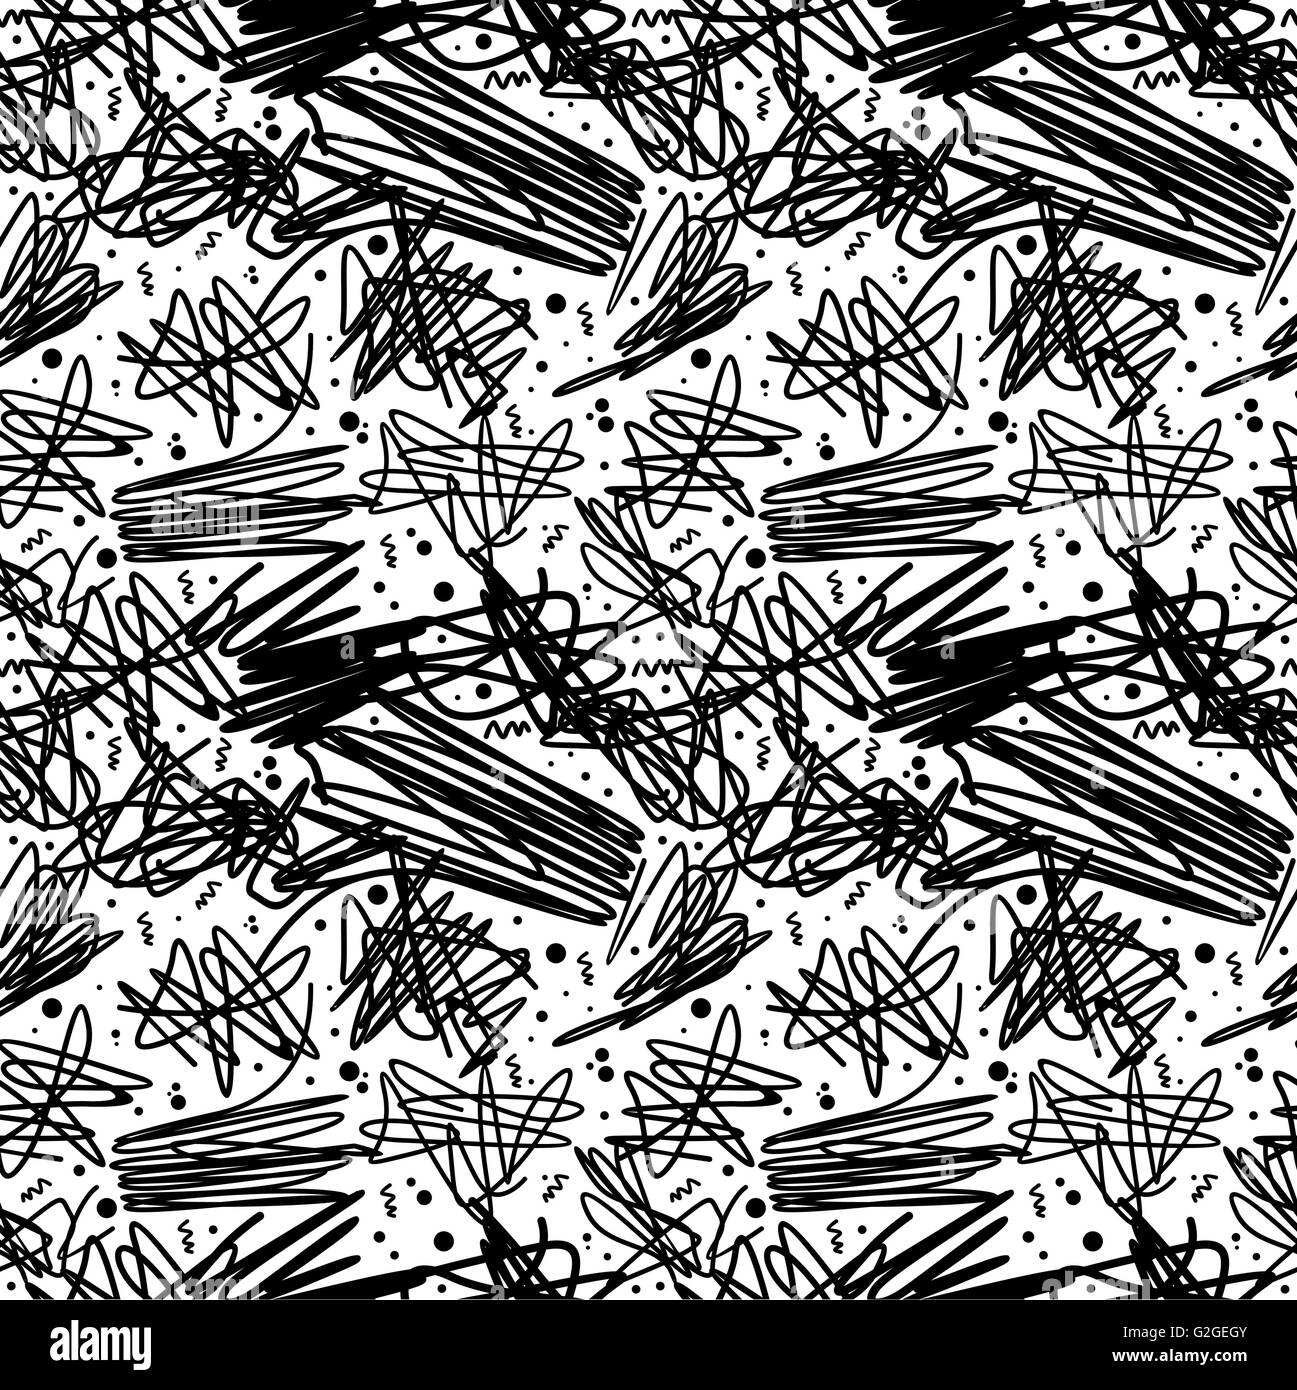 Retro Vintage 80er Jahre nahtlose Muster in schwarz und weiß mit abstrakten Doodle Kunstdesign, Memphis-Mode-Stil. EPS10 Vektor. Stock Vektor